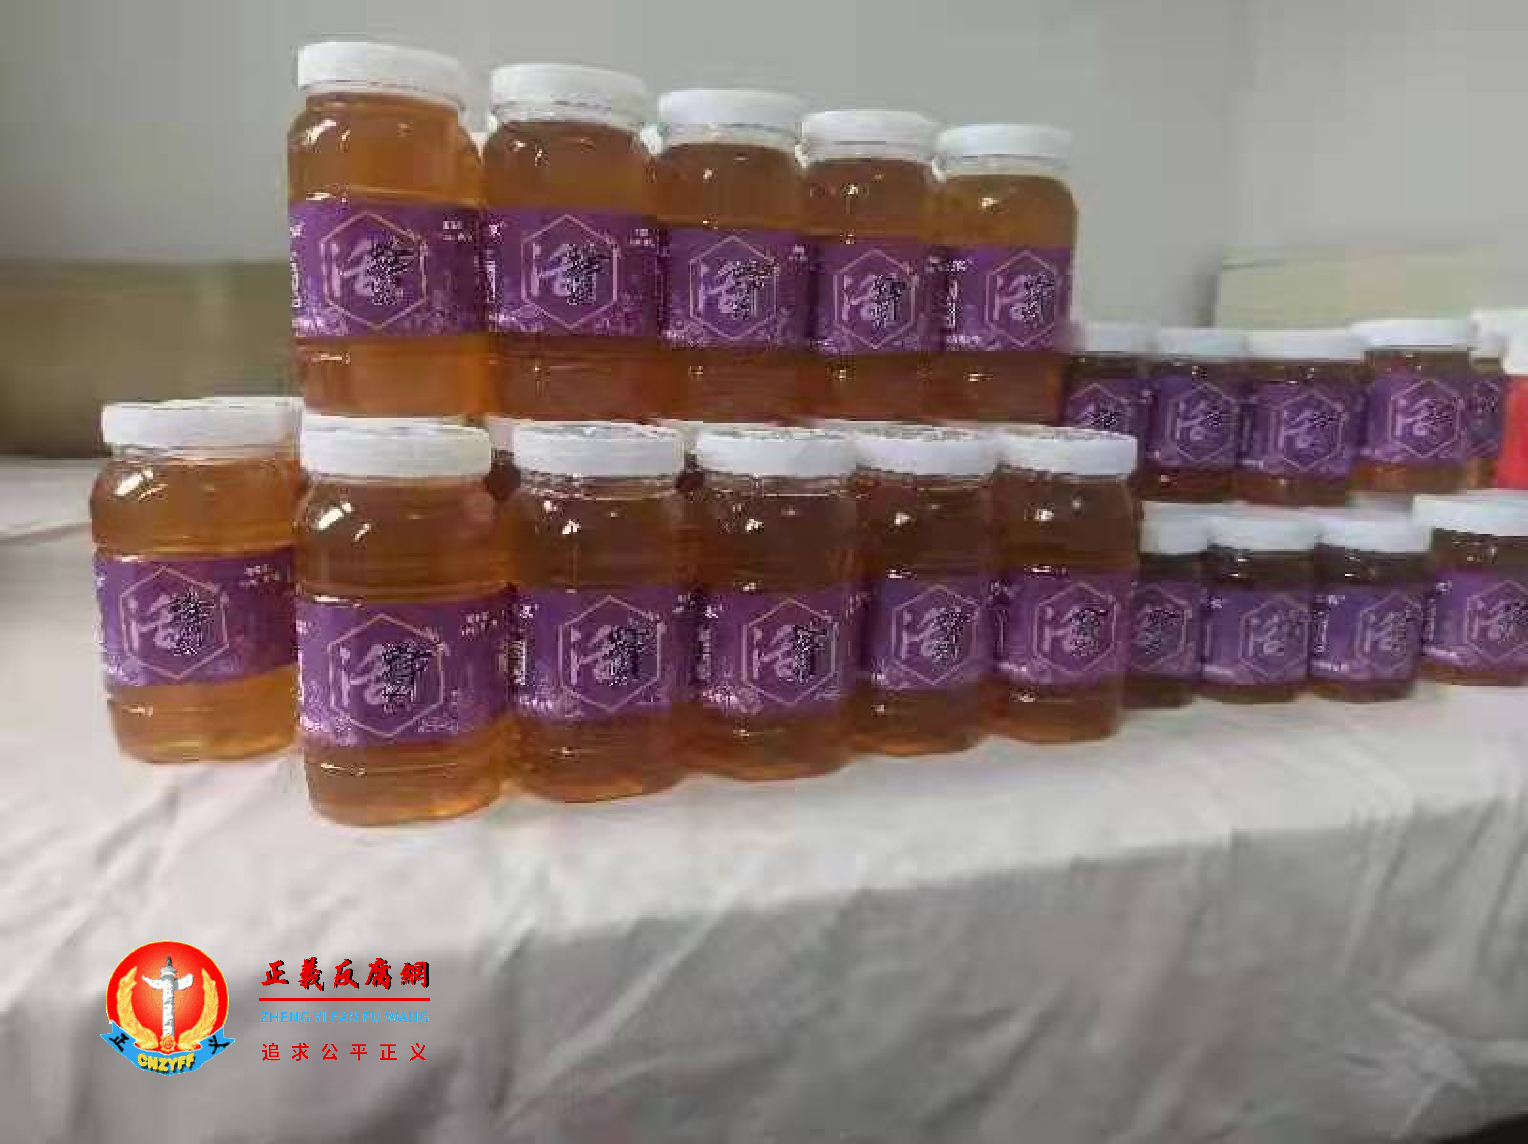 为帮助太行山农民，侯丽琴收购蜂农蜂蜜来销售。.png